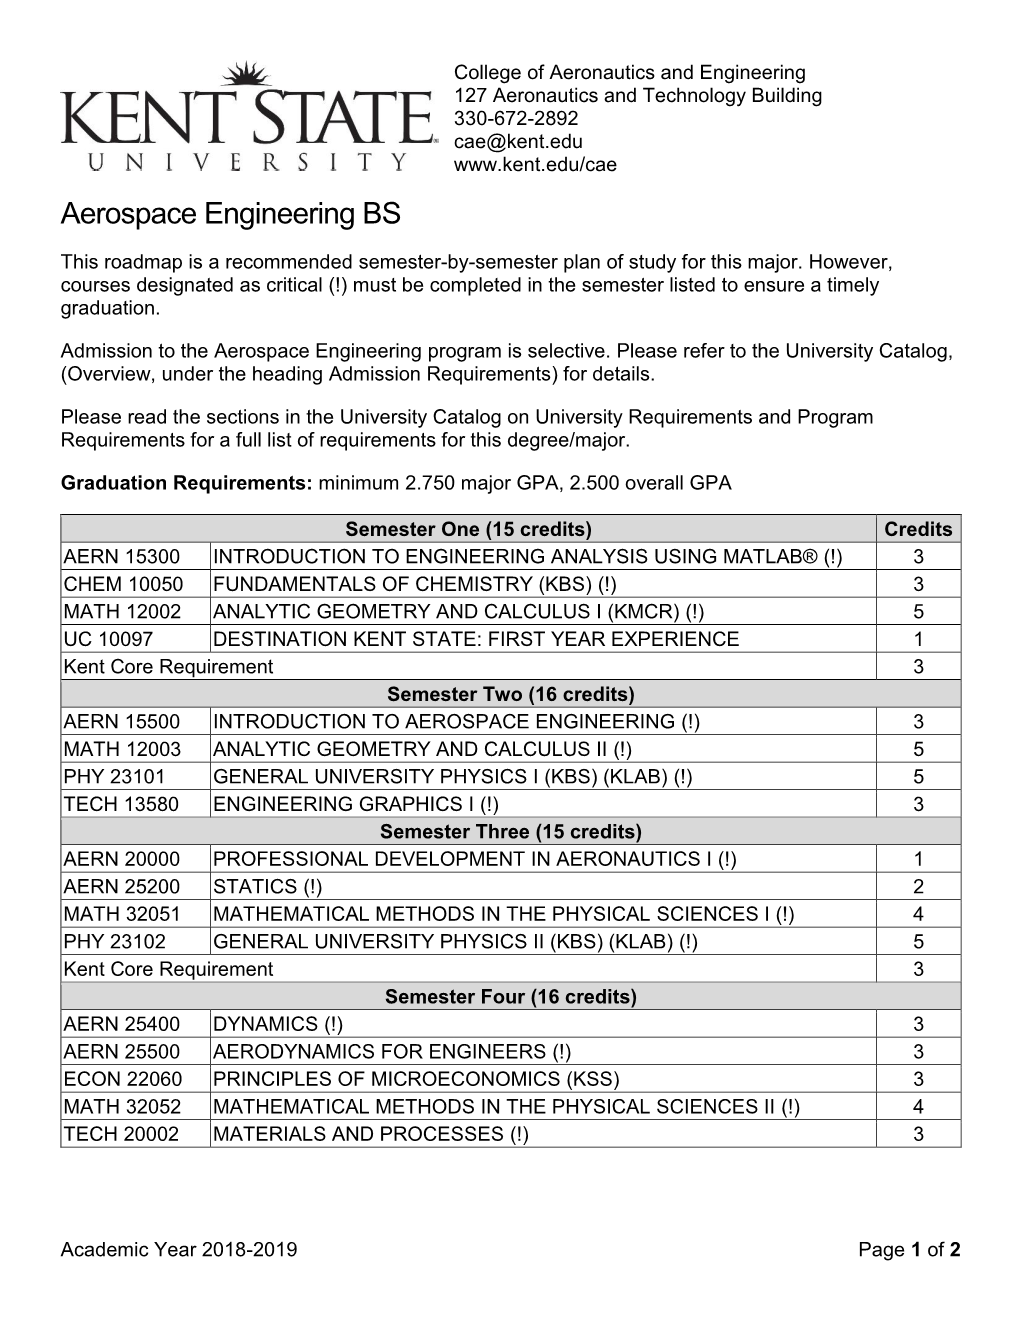 Roadmap Aerospace Engineering BS